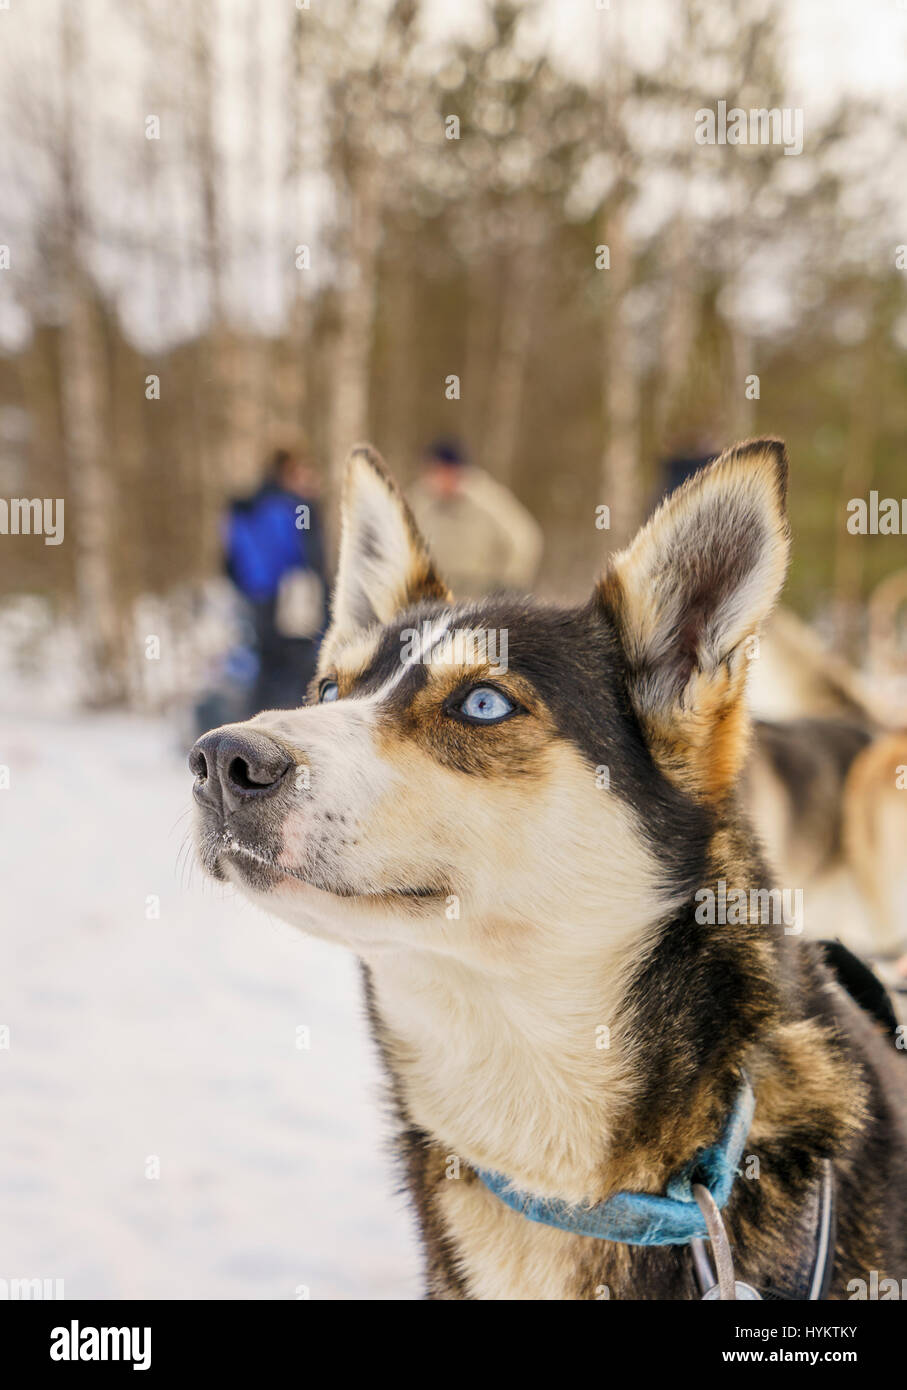 Husky sled dog, Lapland, Finland Stock Photo